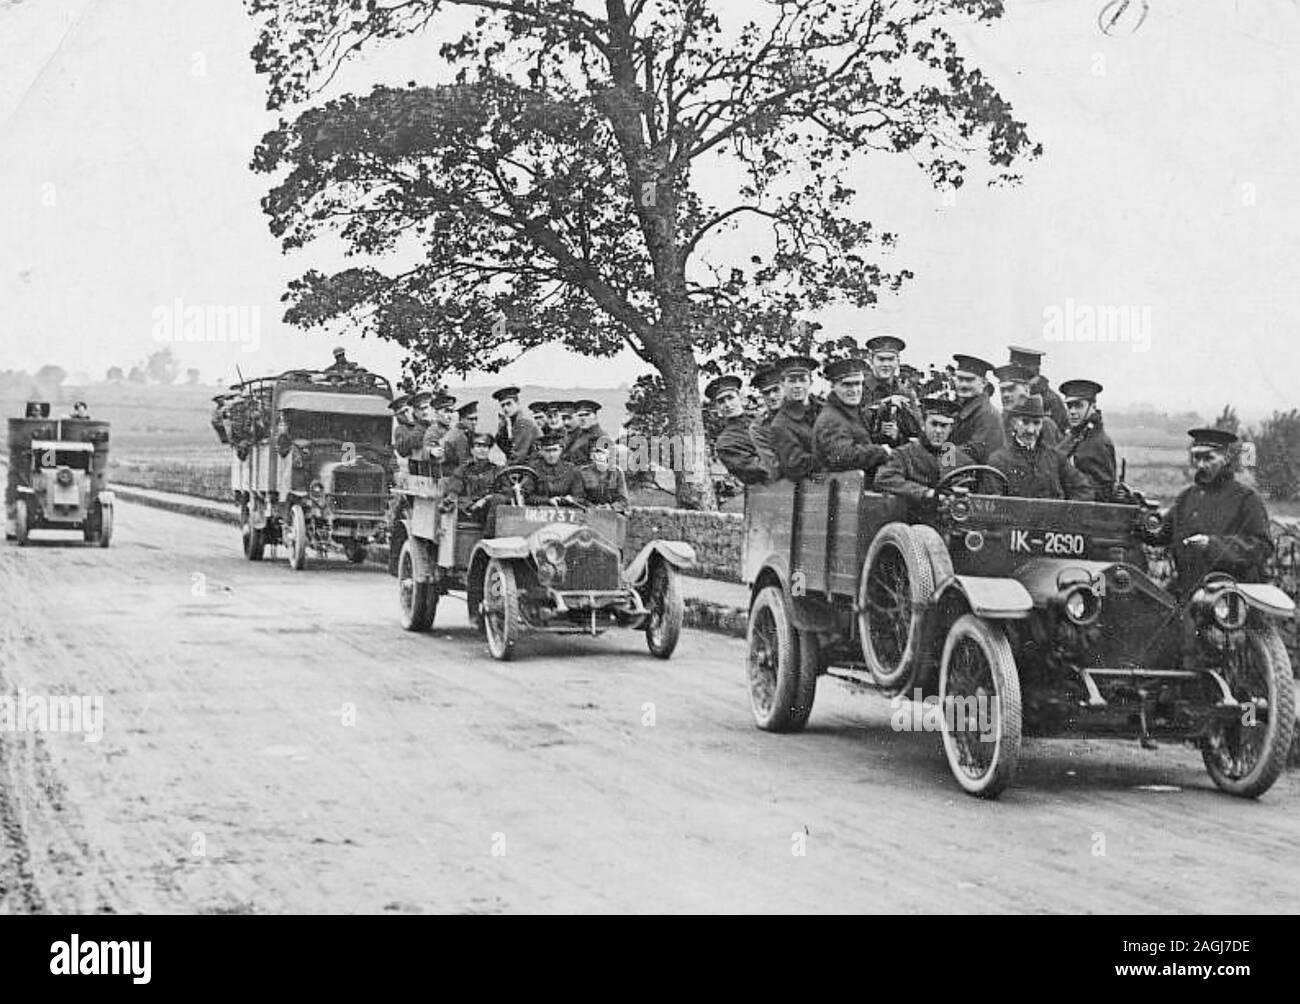 ROYAL IRISH POLIZEI auf Patrouille in Limerick im Jahre 1920. Beachten Sie die gepanzerten Auto auf der linken Seite. Stockfoto